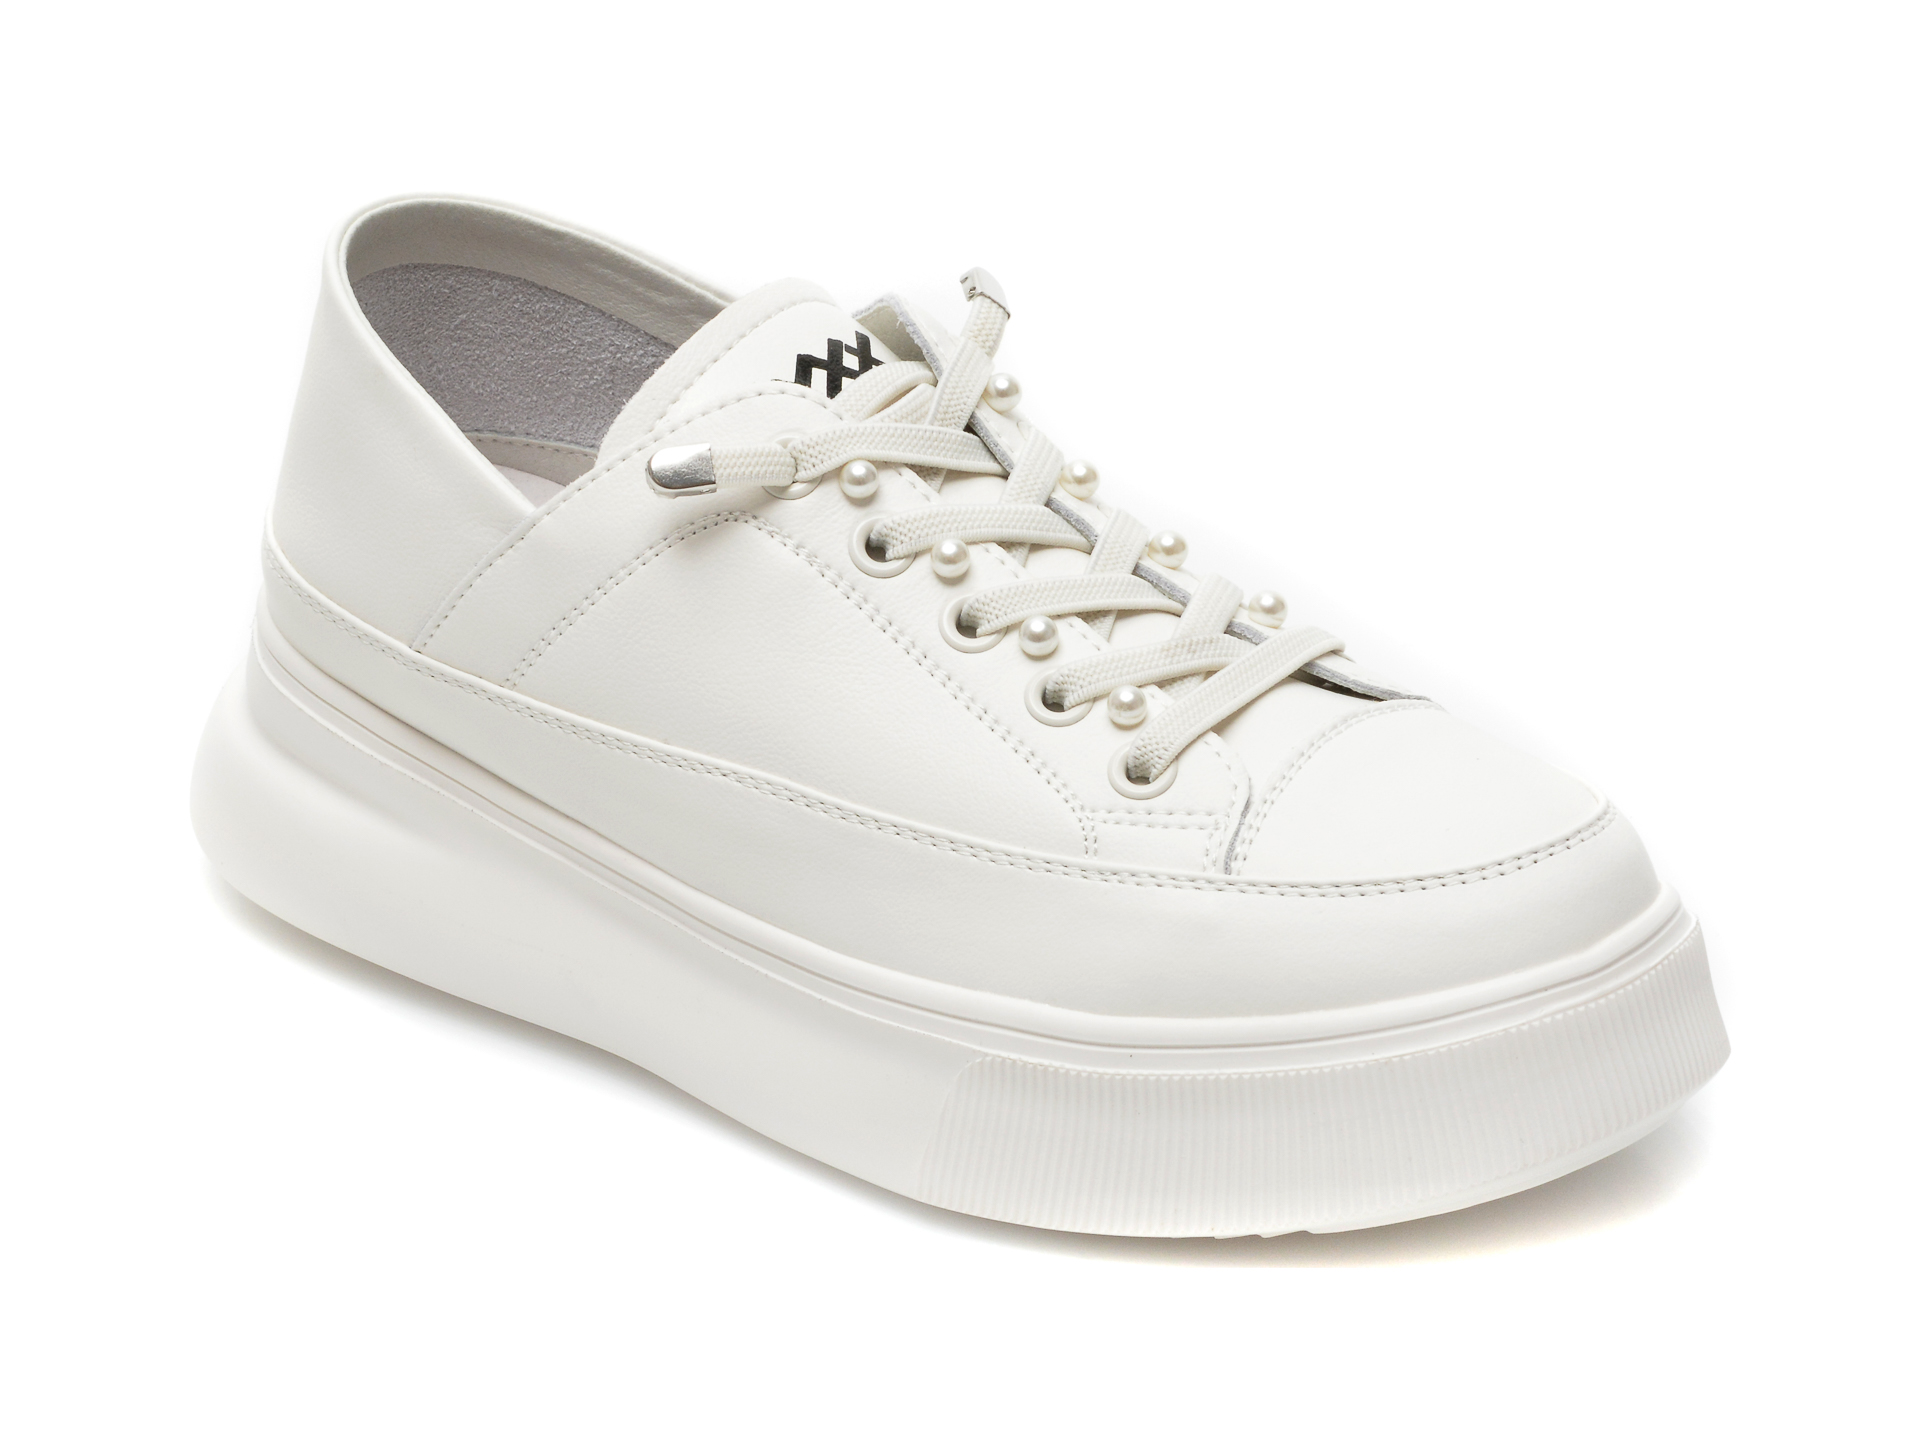 Pantofi sport GRYXX albi, B756, din piele naturala Gryxx Gryxx